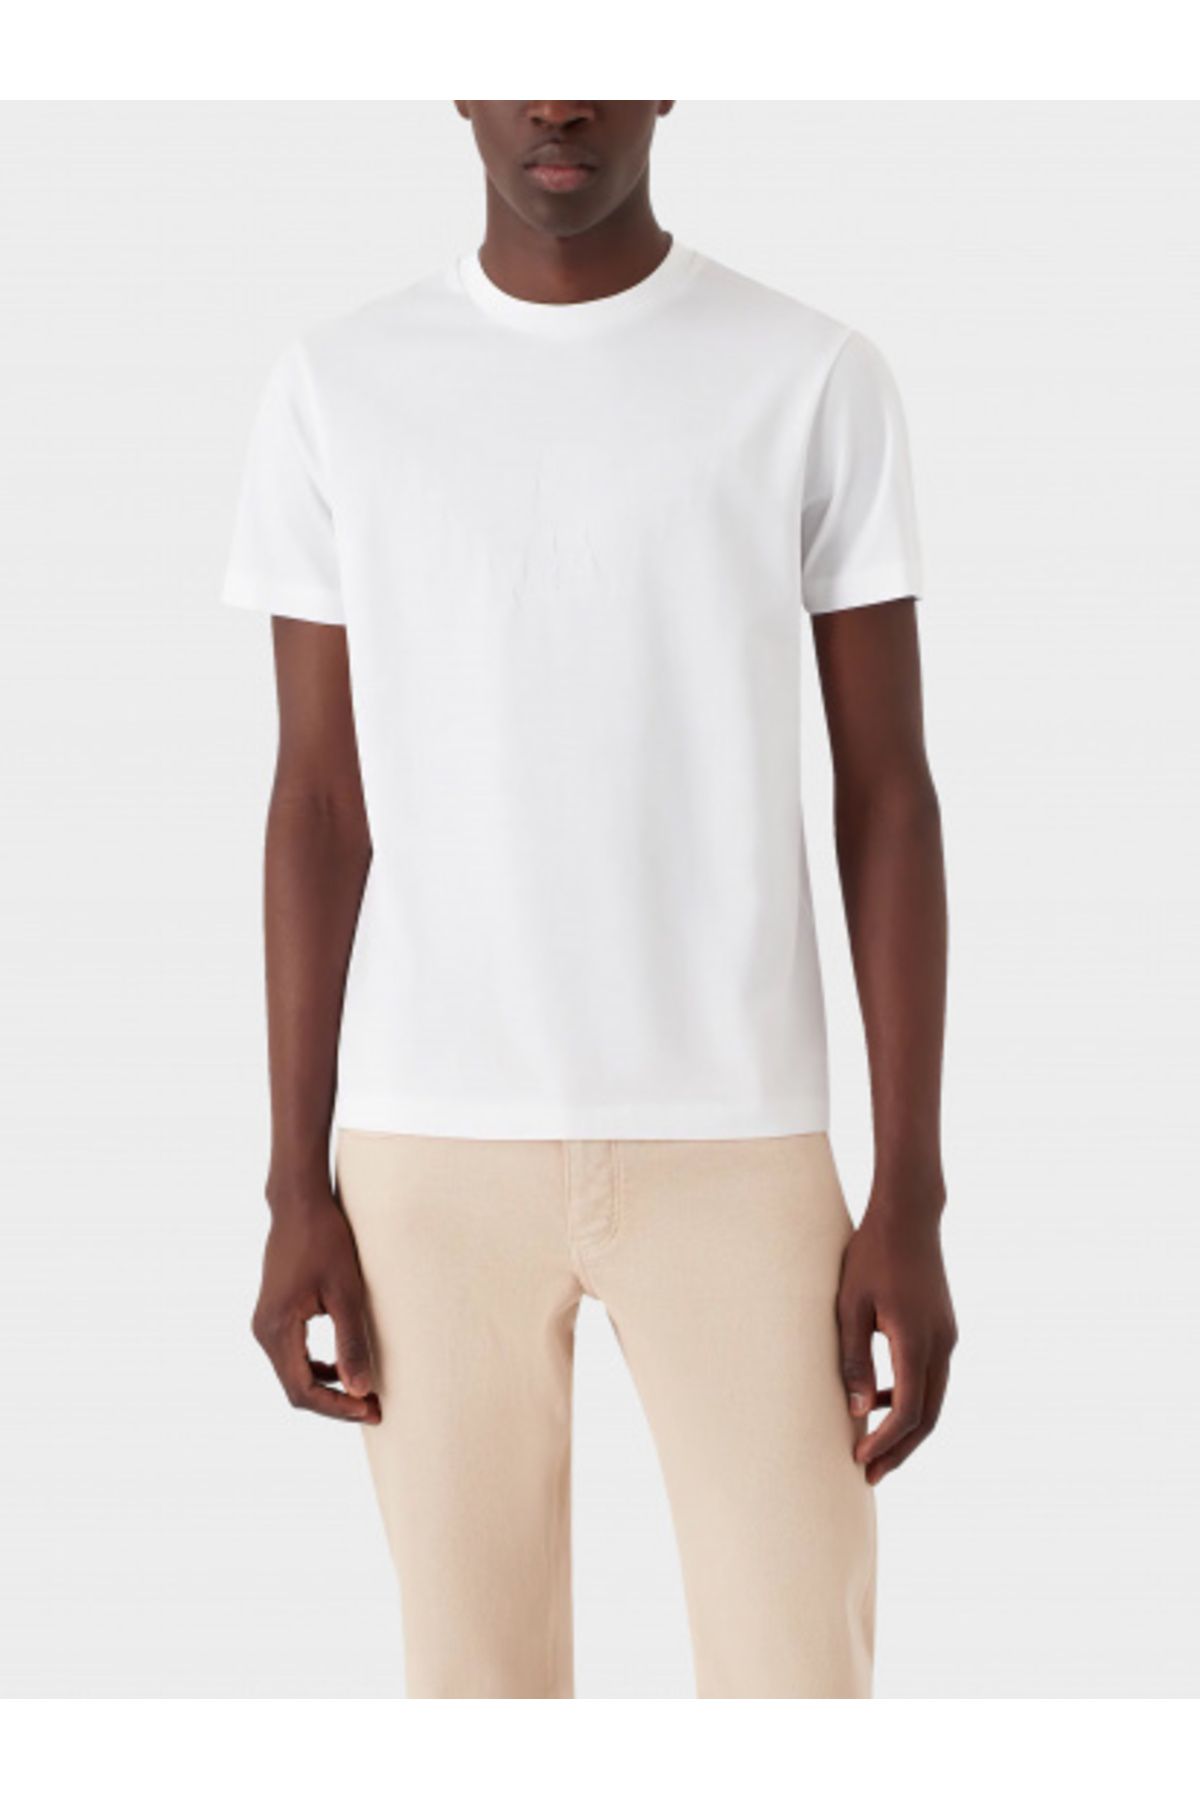 Emporio Armani Erkek Pamuklu Marka Logolu Yuvarlak Yaka Beyaz1 T-Shirt 8N1TD2 1JGYZ-0147